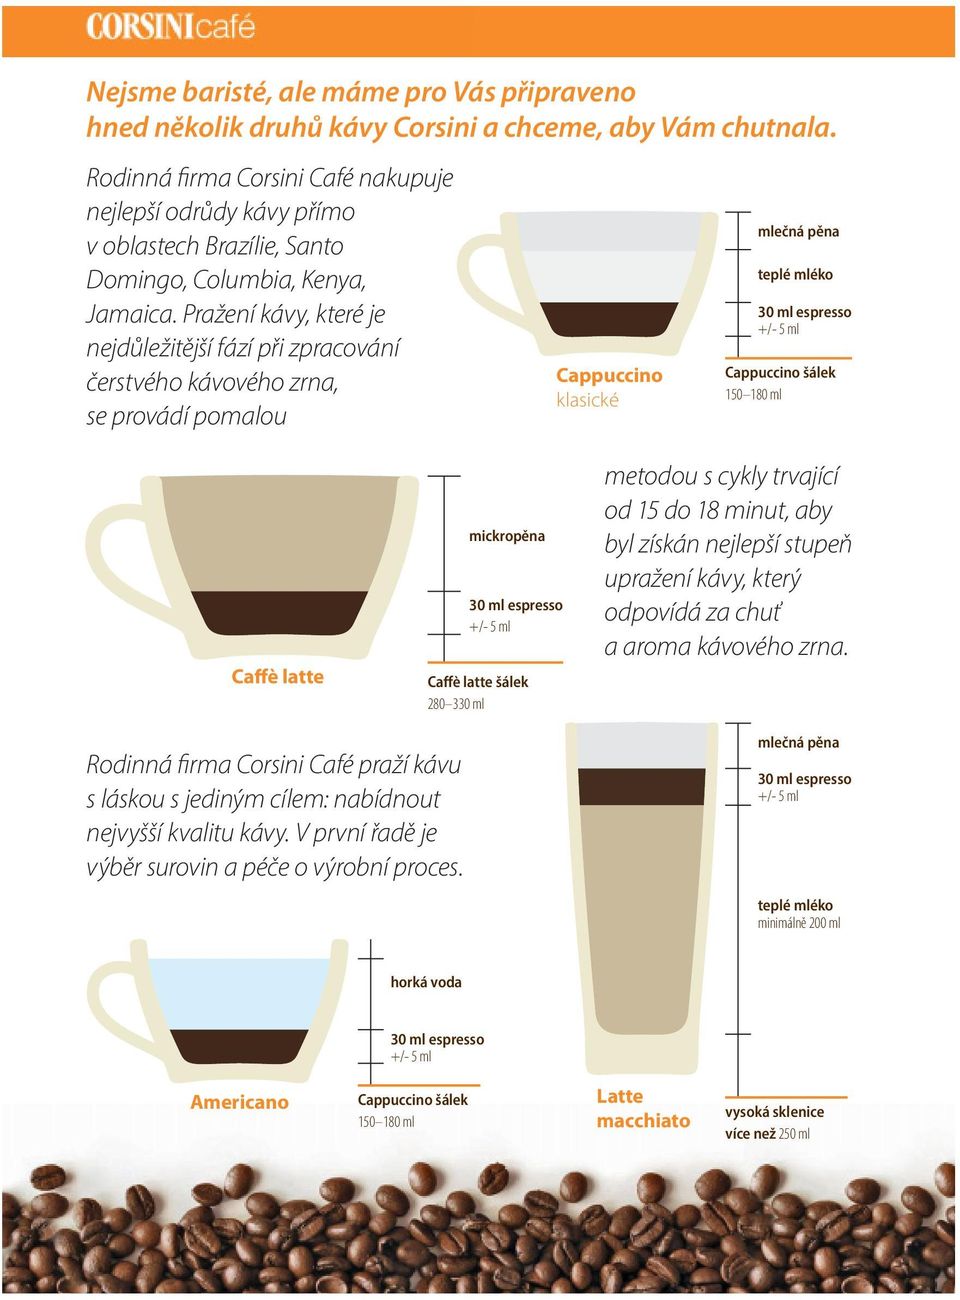 Pražení kávy, které je nejdůležitější fází při zpracování čerstvého kávového zrna, se provádí pomalou Cappuccino klasické mlečná pěna teplé mléko 30 ml espresso +/- 5 ml Cappuccino šálek 150 180 ml